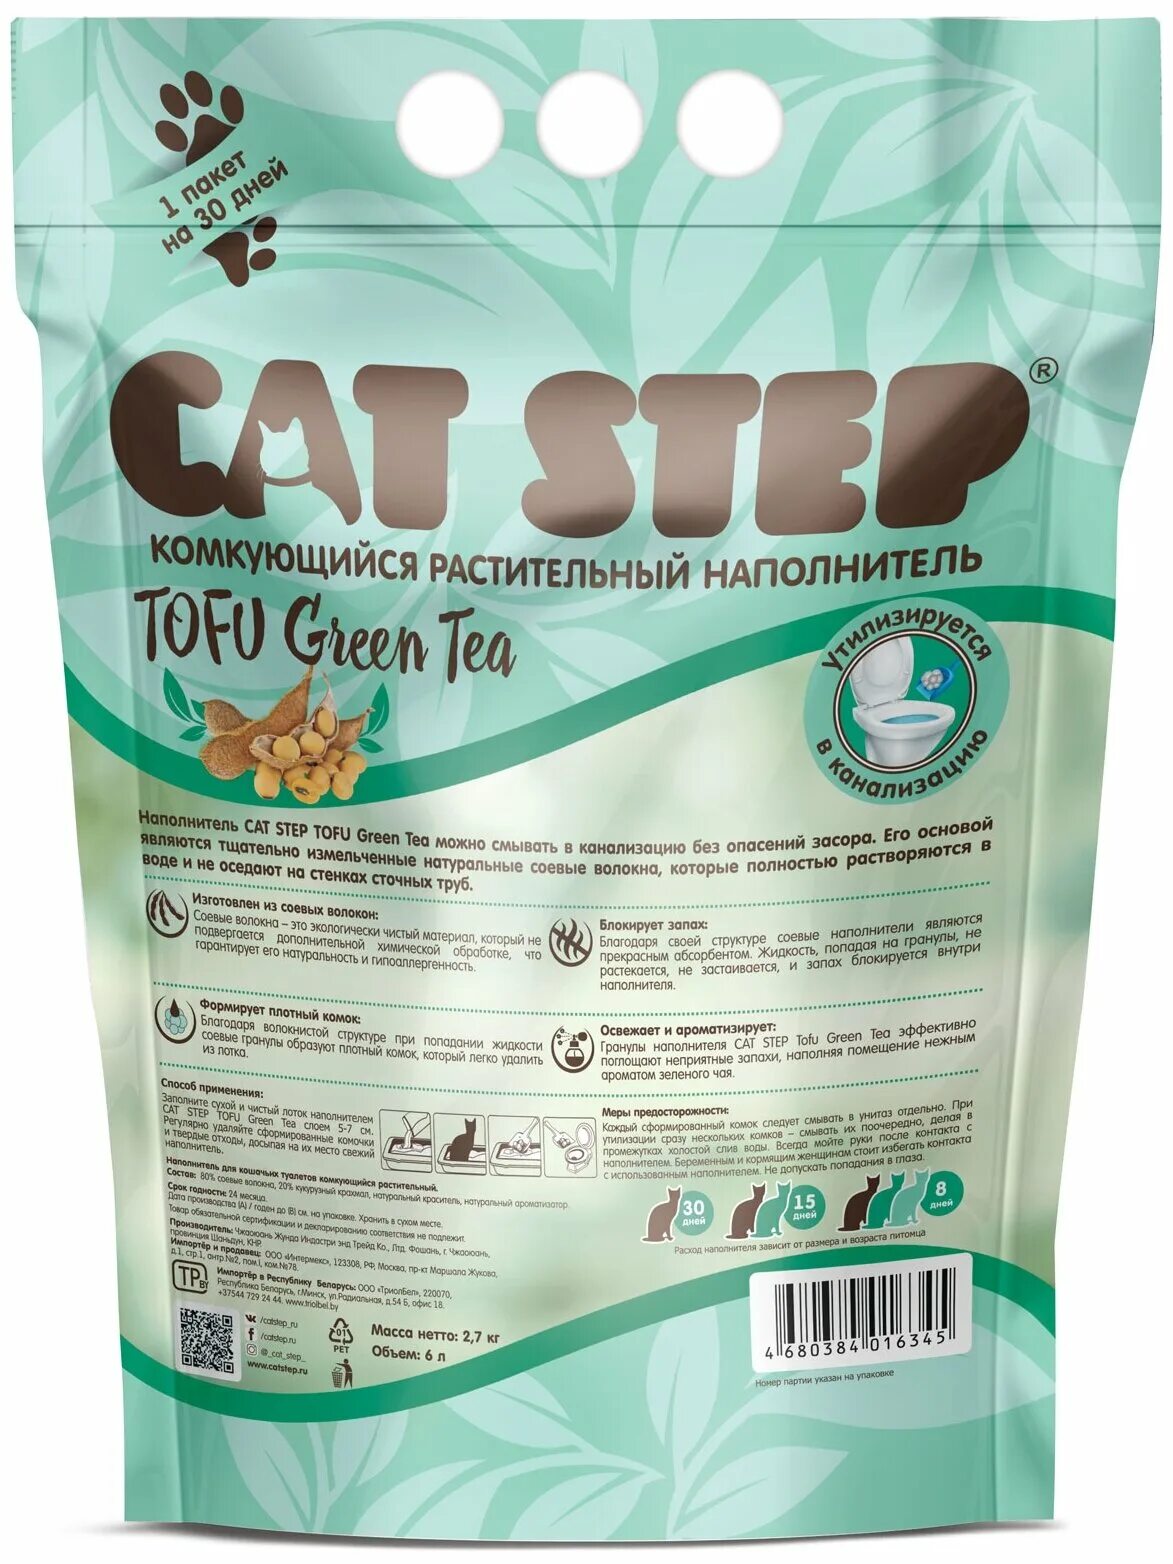 Cat Step наполнитель Tofu Green. Комкующийся наполнитель Cat Step Tofu Green Tea растительный 6 л. Наполнитель Tofu Green Tea. Кэт степ тофу зеленый чай.